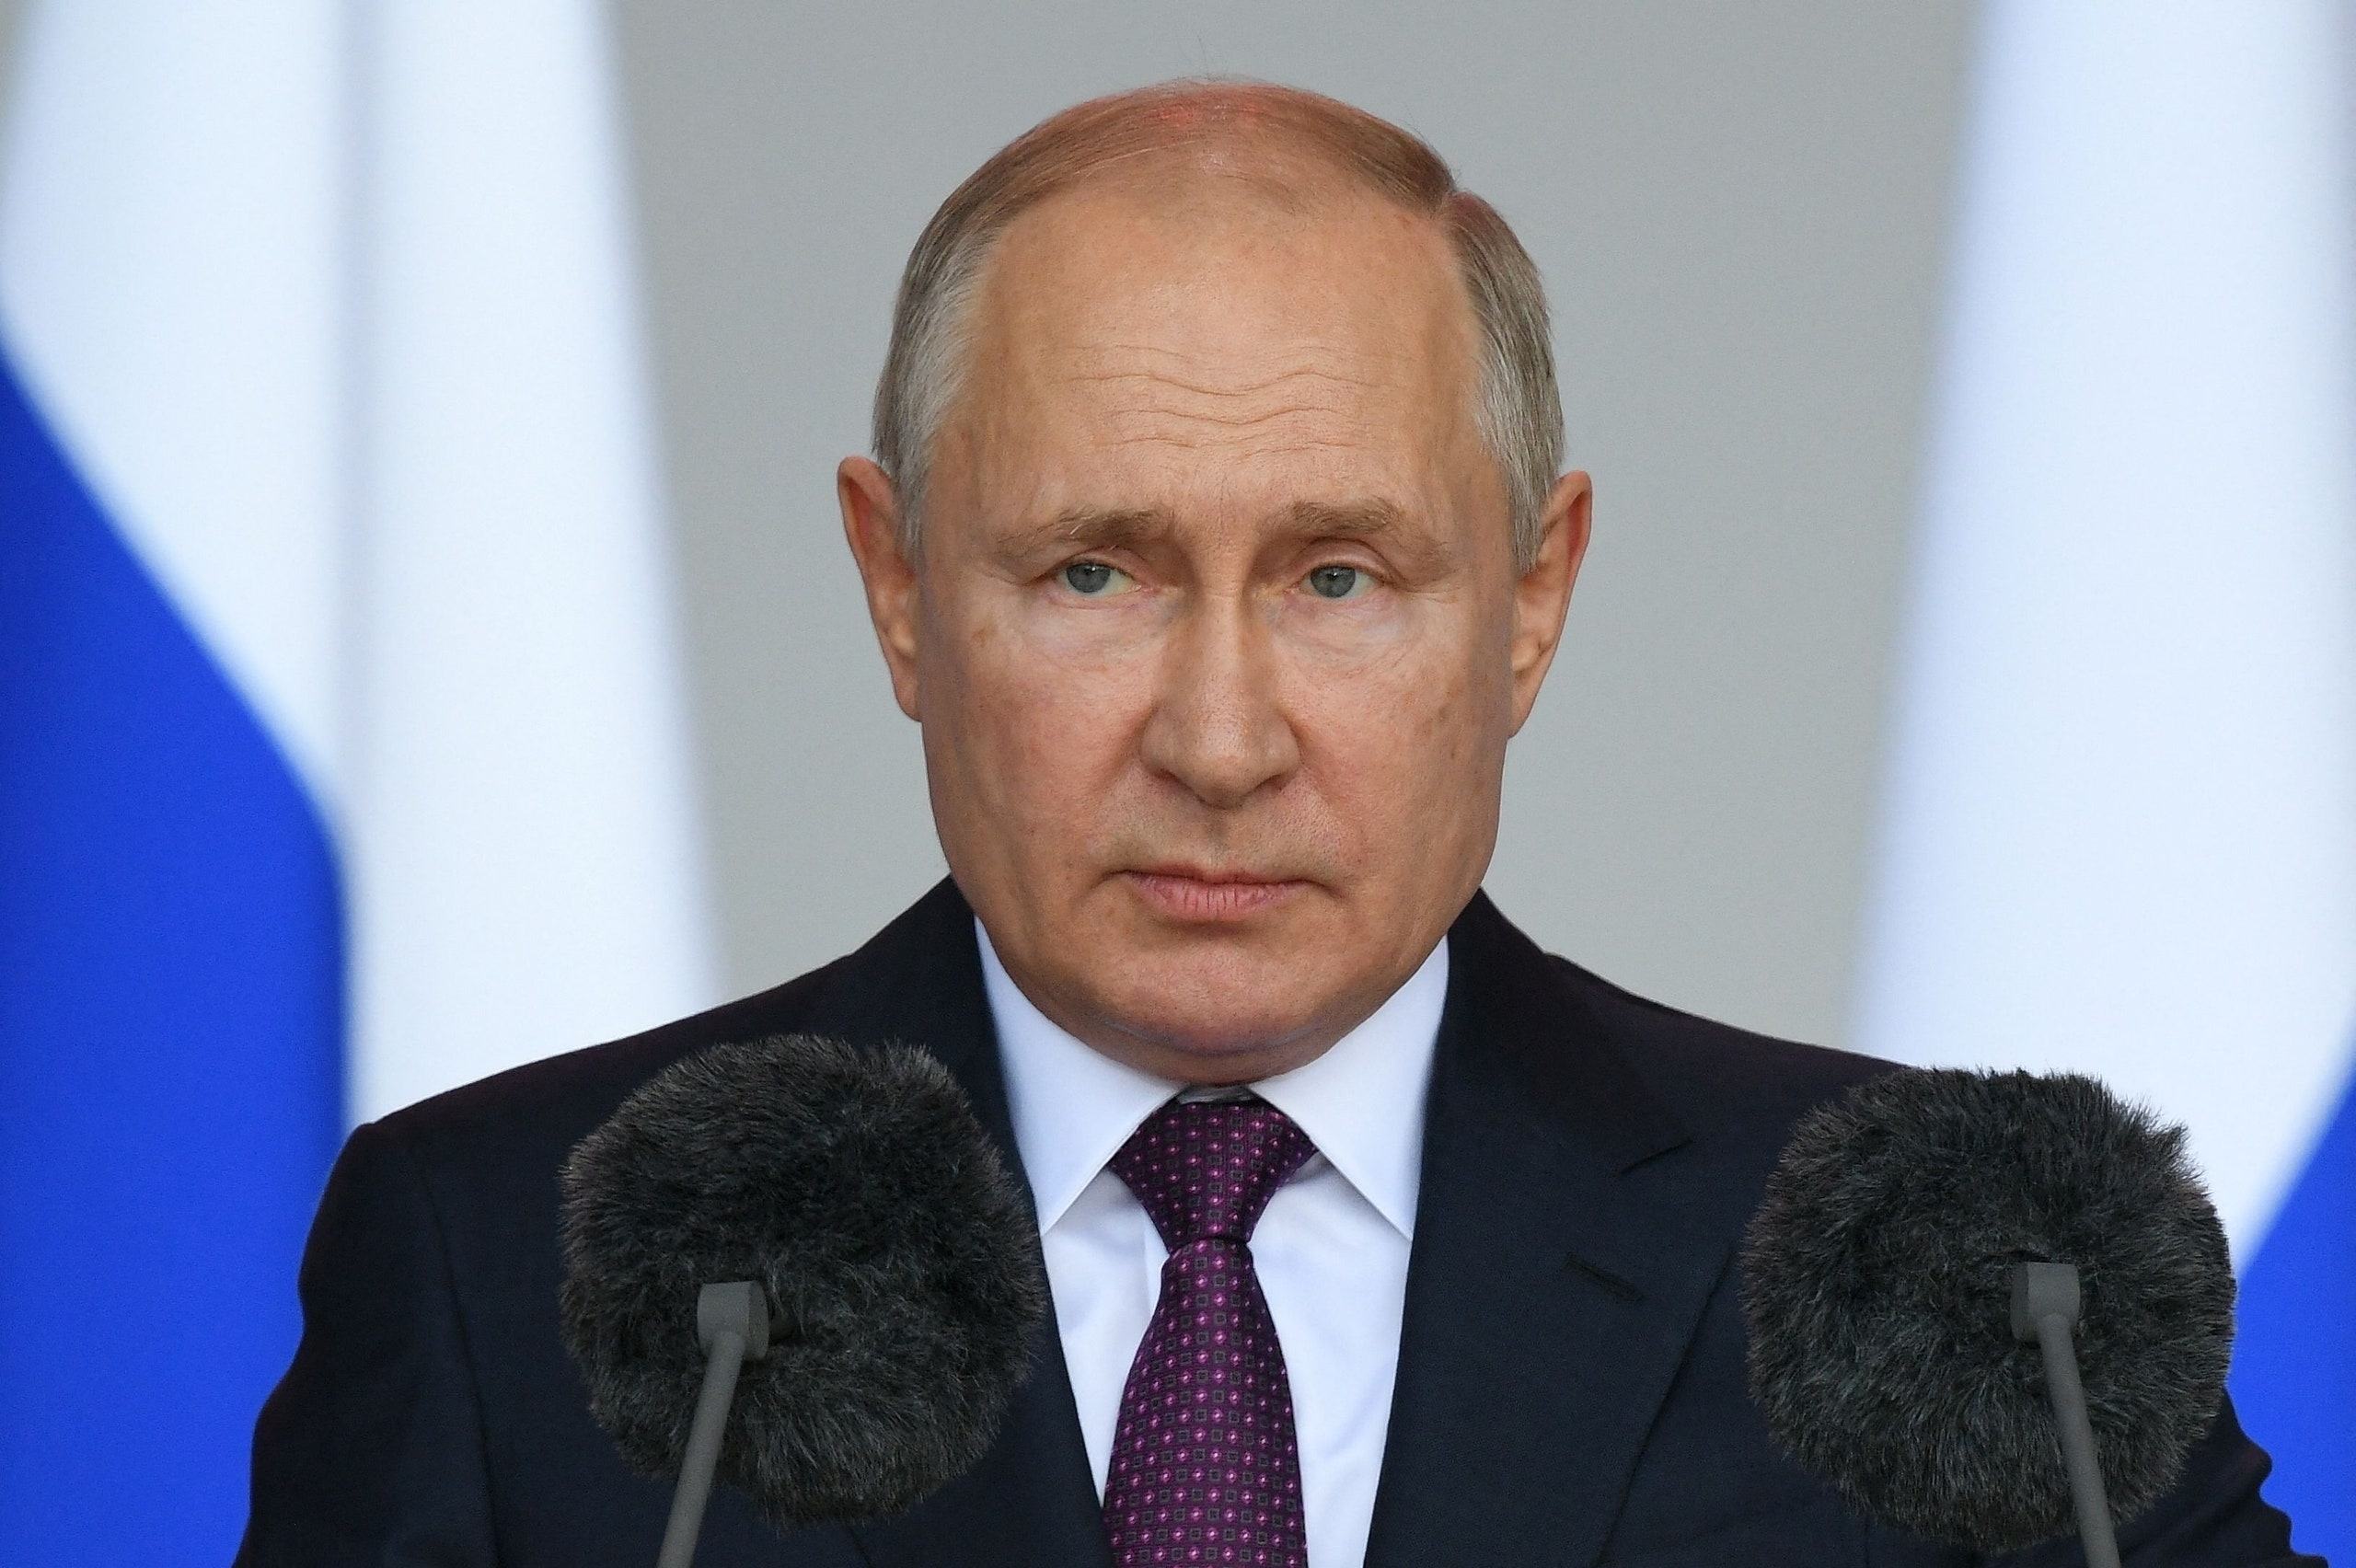 Mosca alza il tiro: “Rischio di conflitto mondiale molto alto”